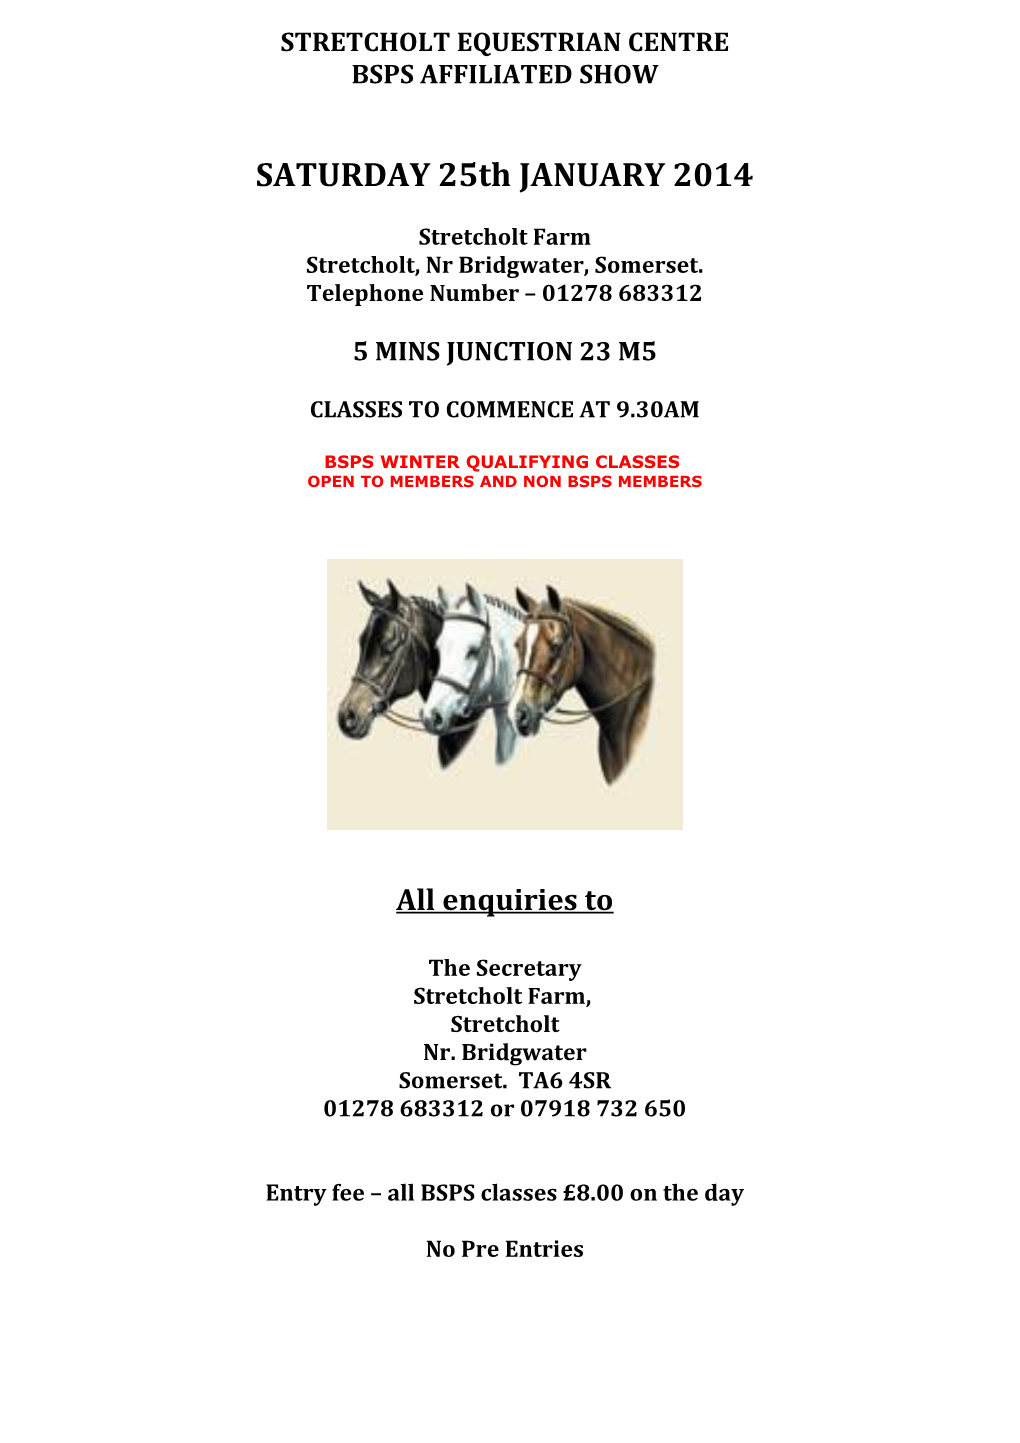 Stretcholt Equestrian Centre